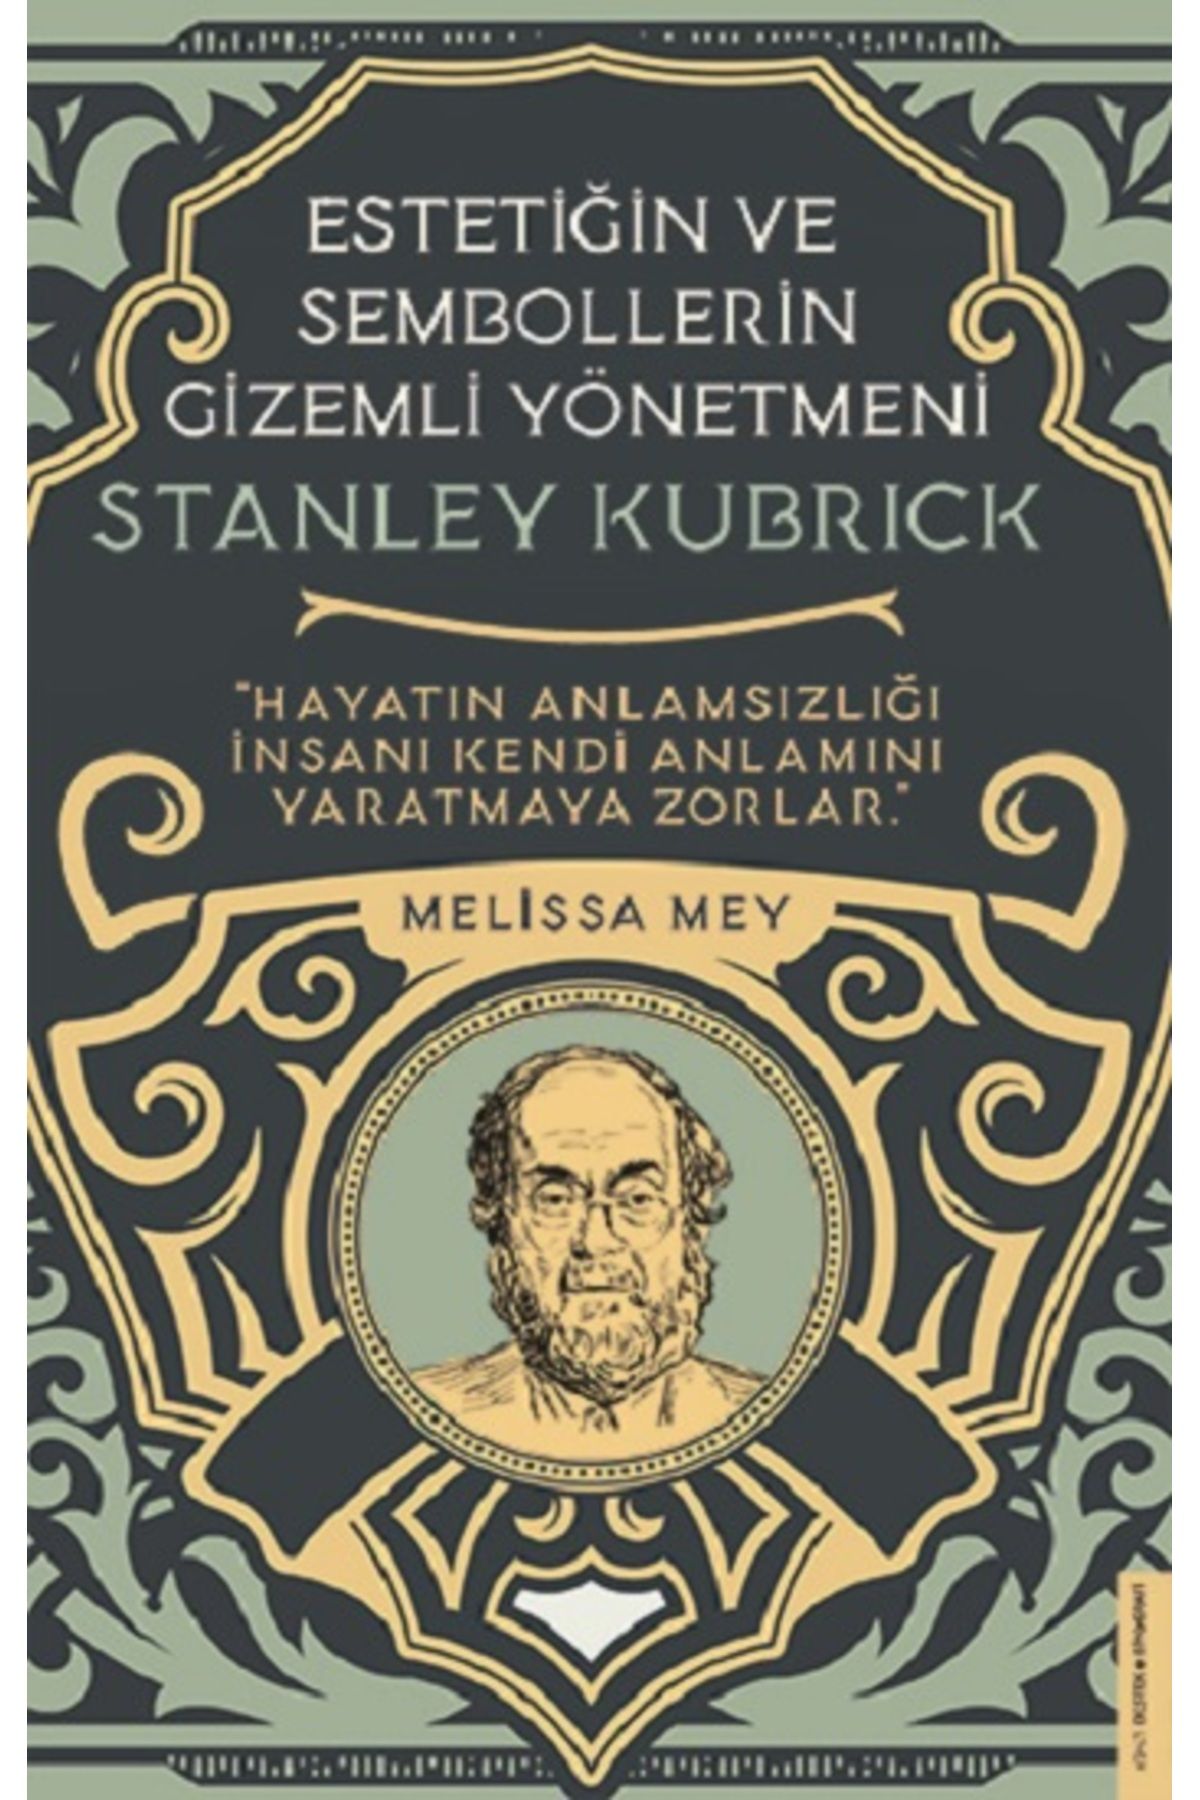 Destek Yayınları Stanley Kubrick-Estetiğin ve Sembollerin Gizemli Yönetmeni